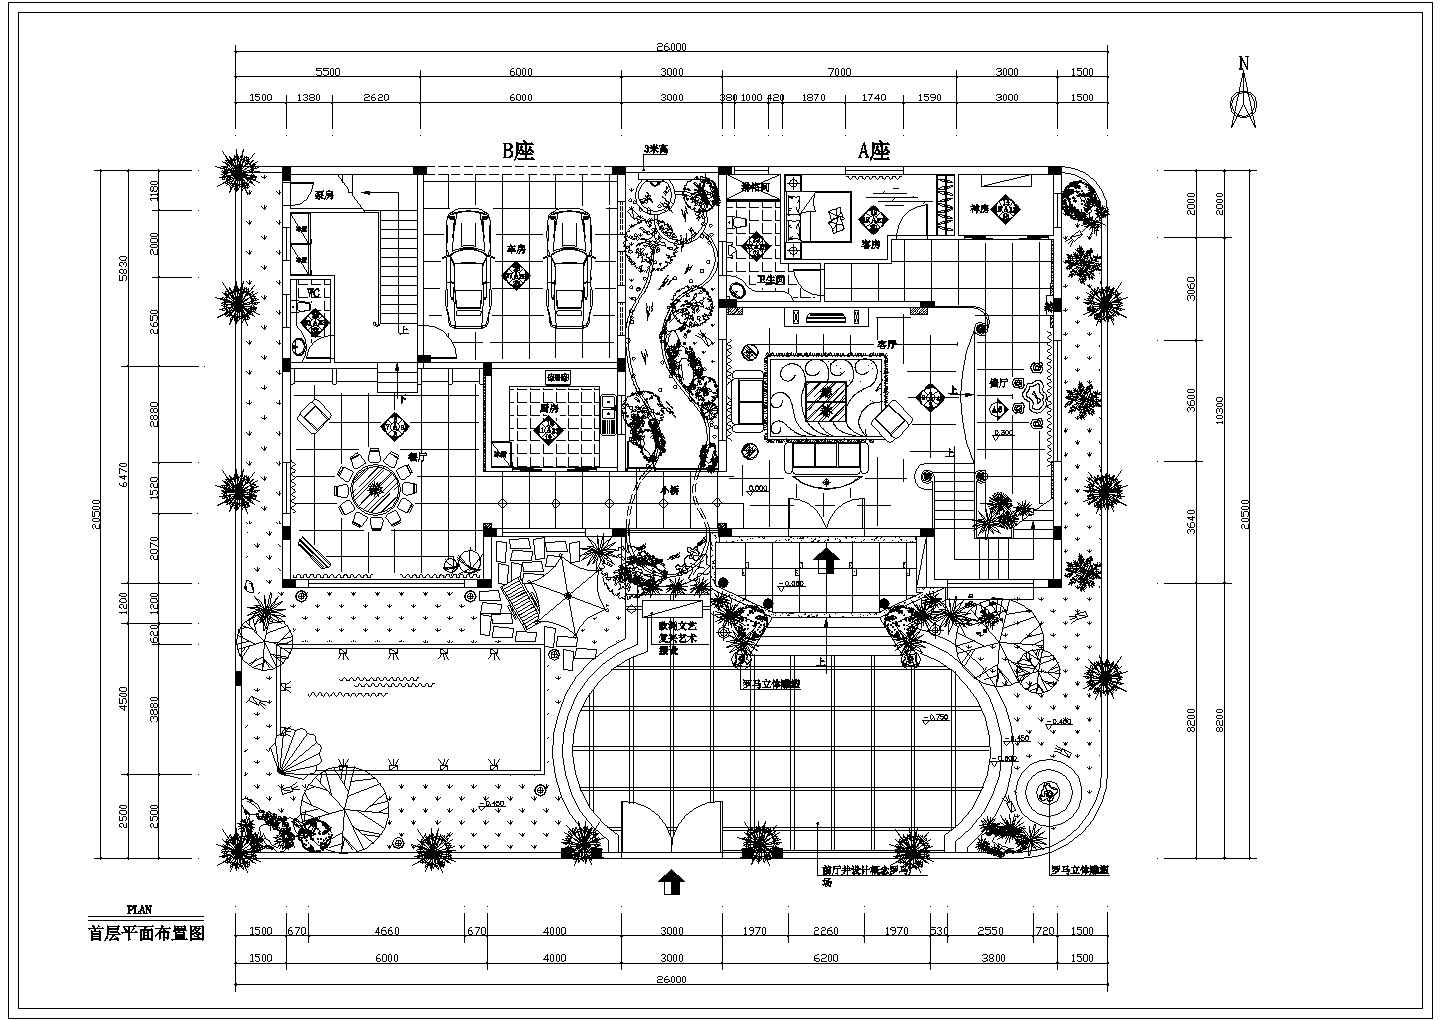 超详细三层欧式别墅带罗马雕塑室内装修设计cad施工布置图纸(带天台花园)